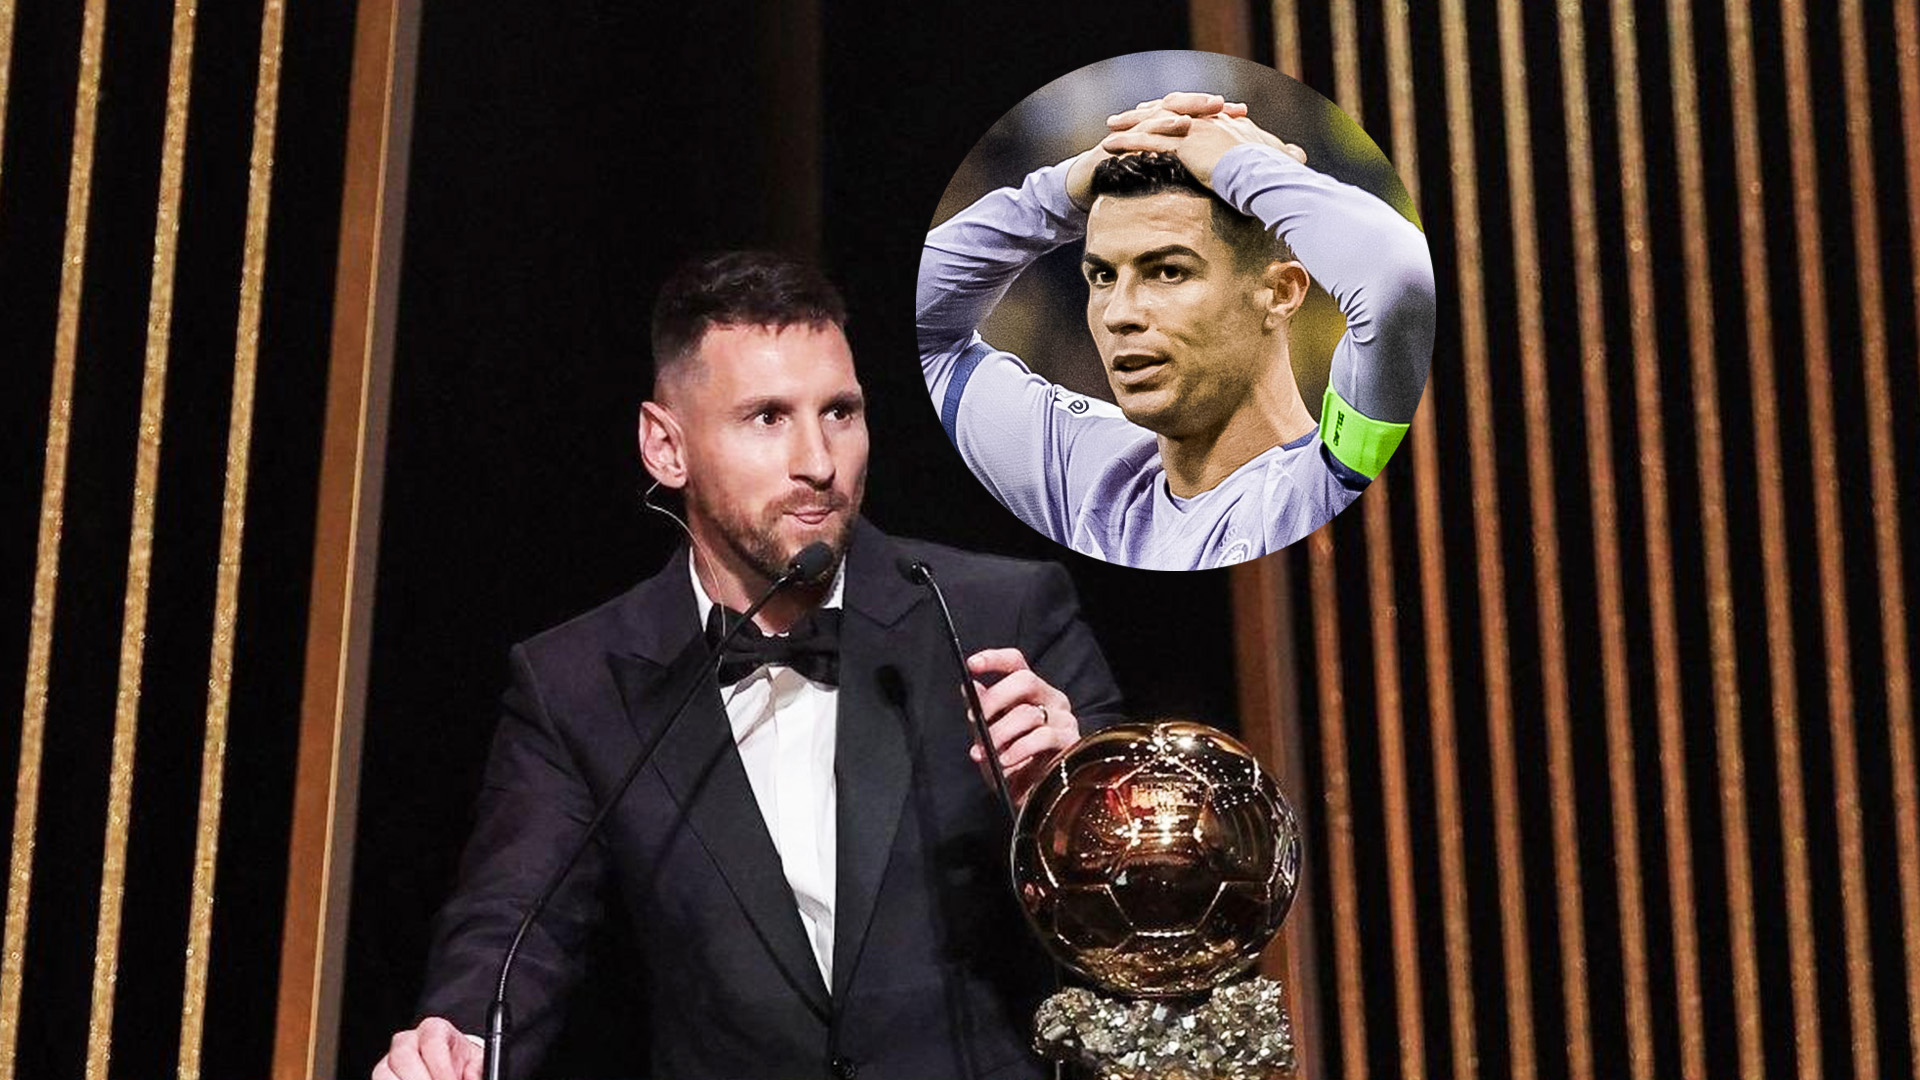 Cristiano Ronaldo reacciona al octavo Balón de Oro de Messi y genera  polémica, Curiosidades de fútbol